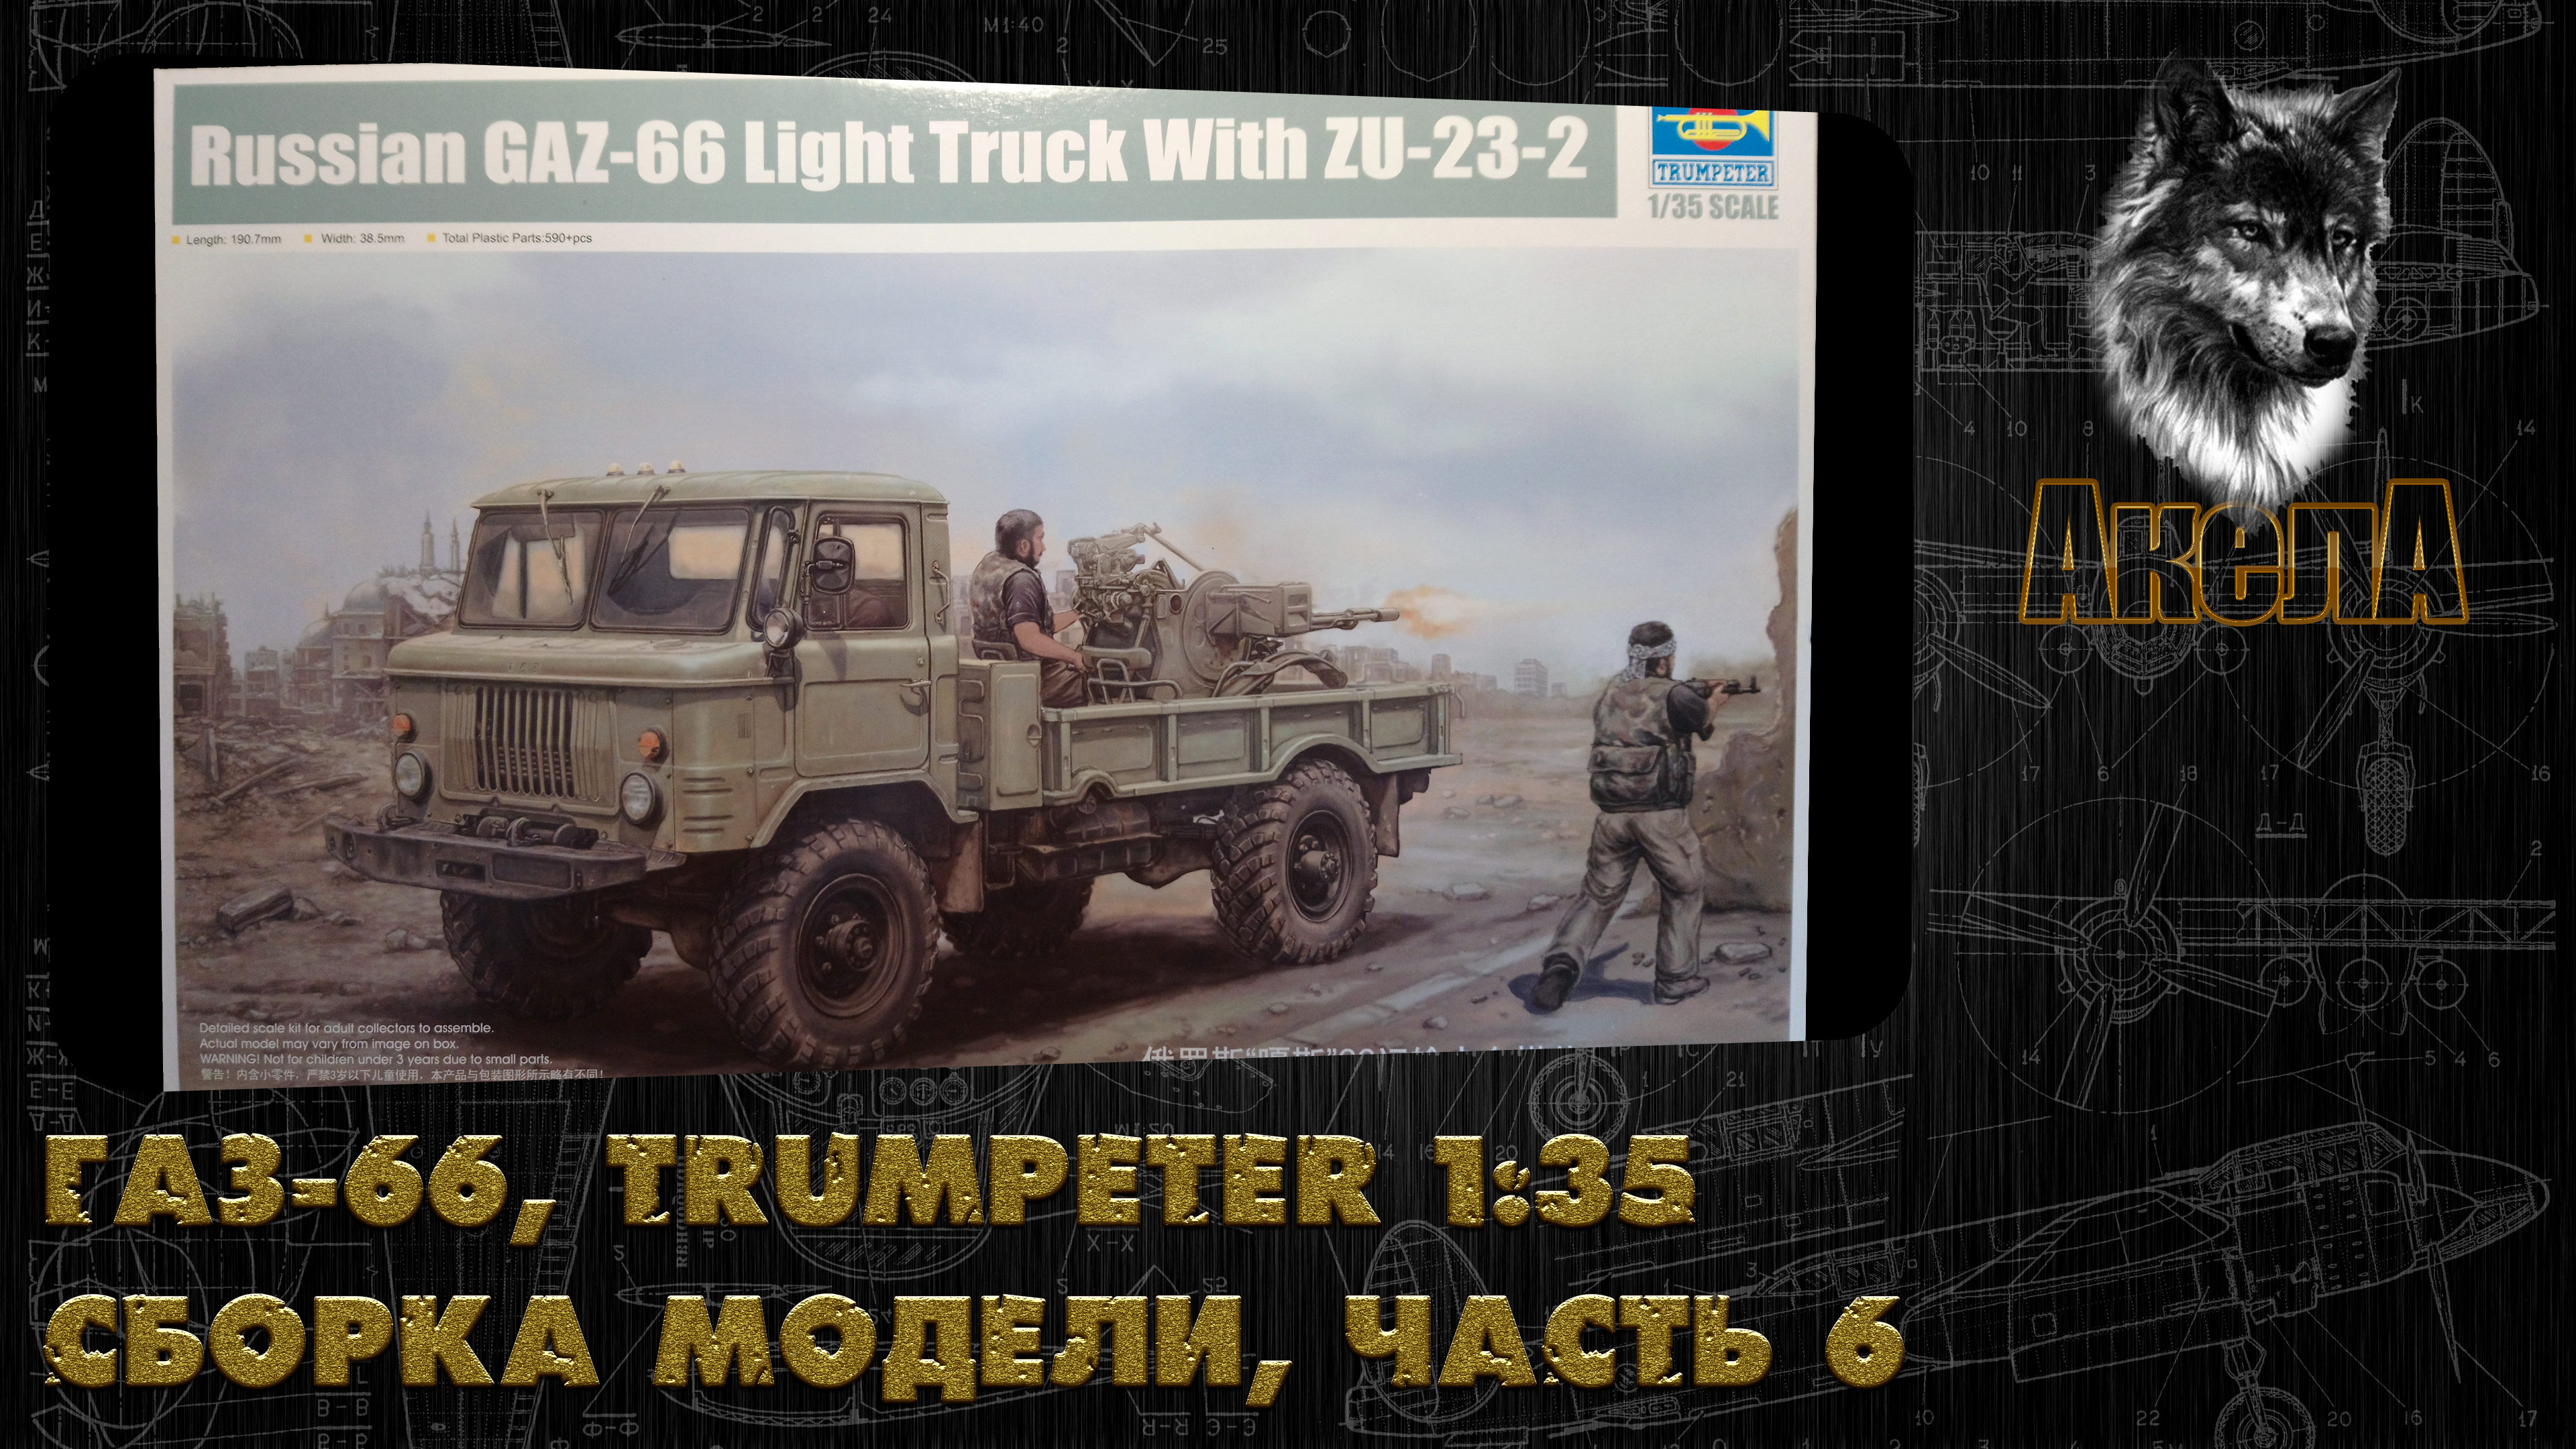 ГАЗ-66 с ЗУ-23-2, Trumpeter 1/35, сборка модели, часть 6